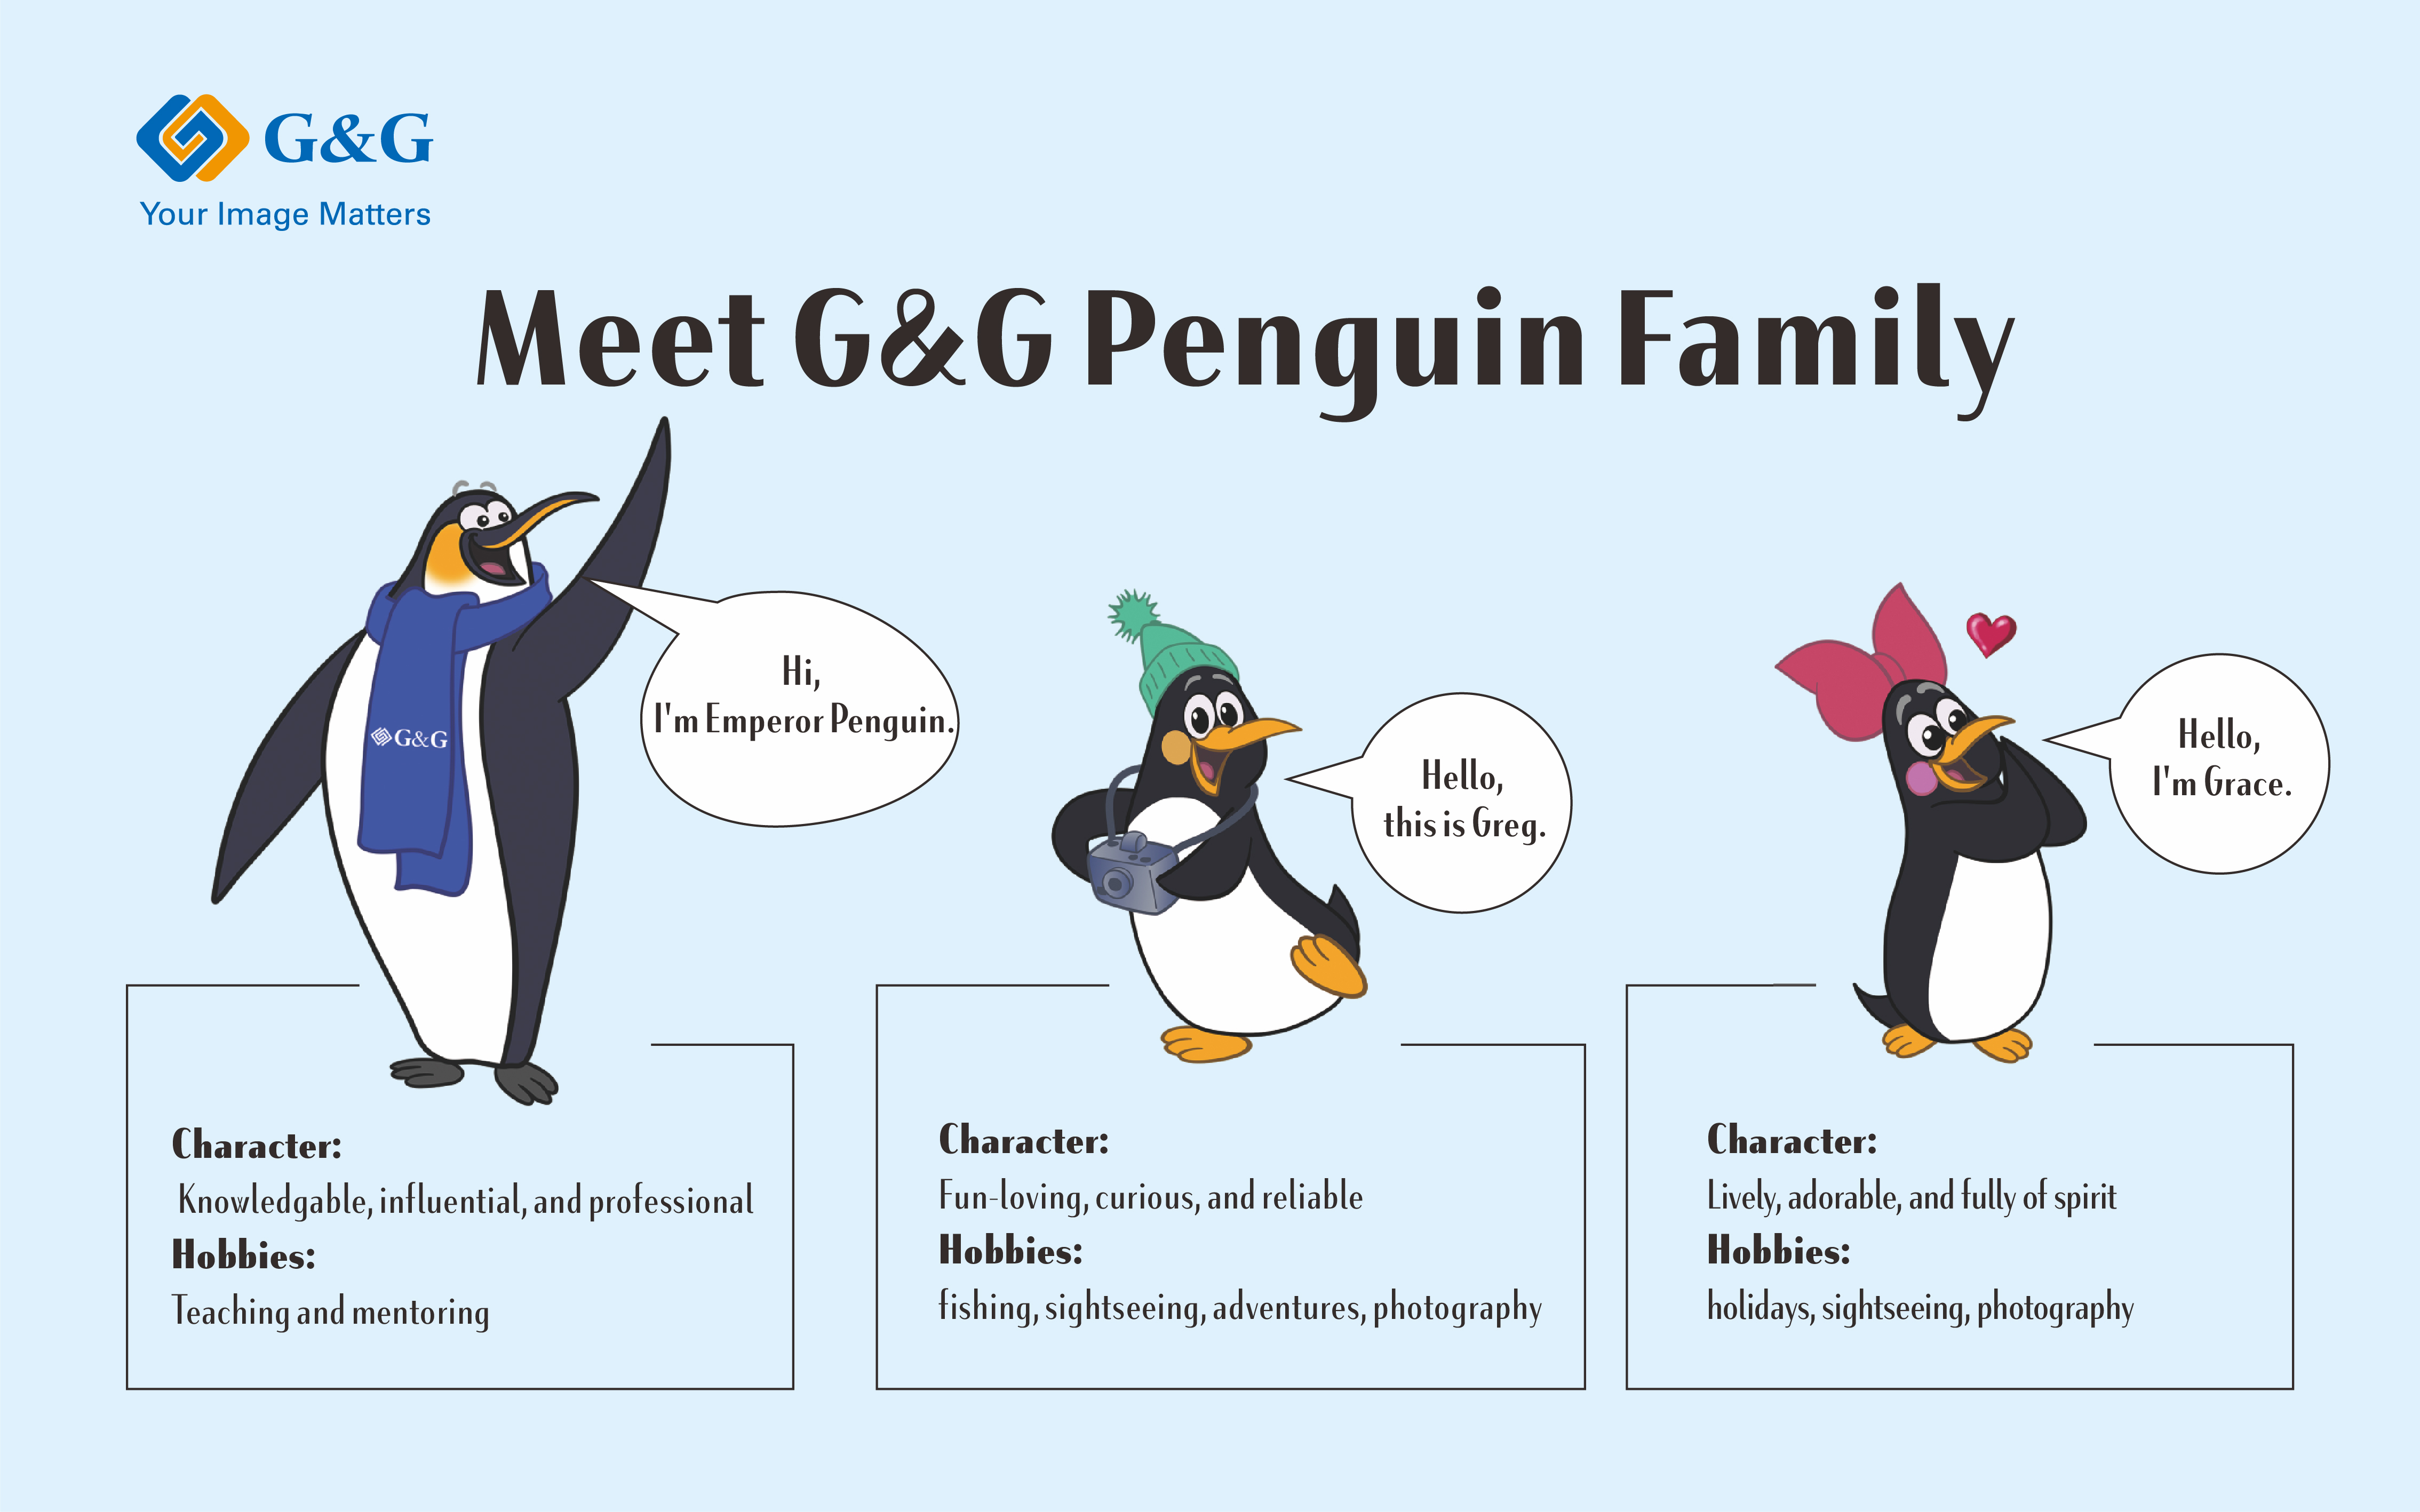 G&G Penguin Family